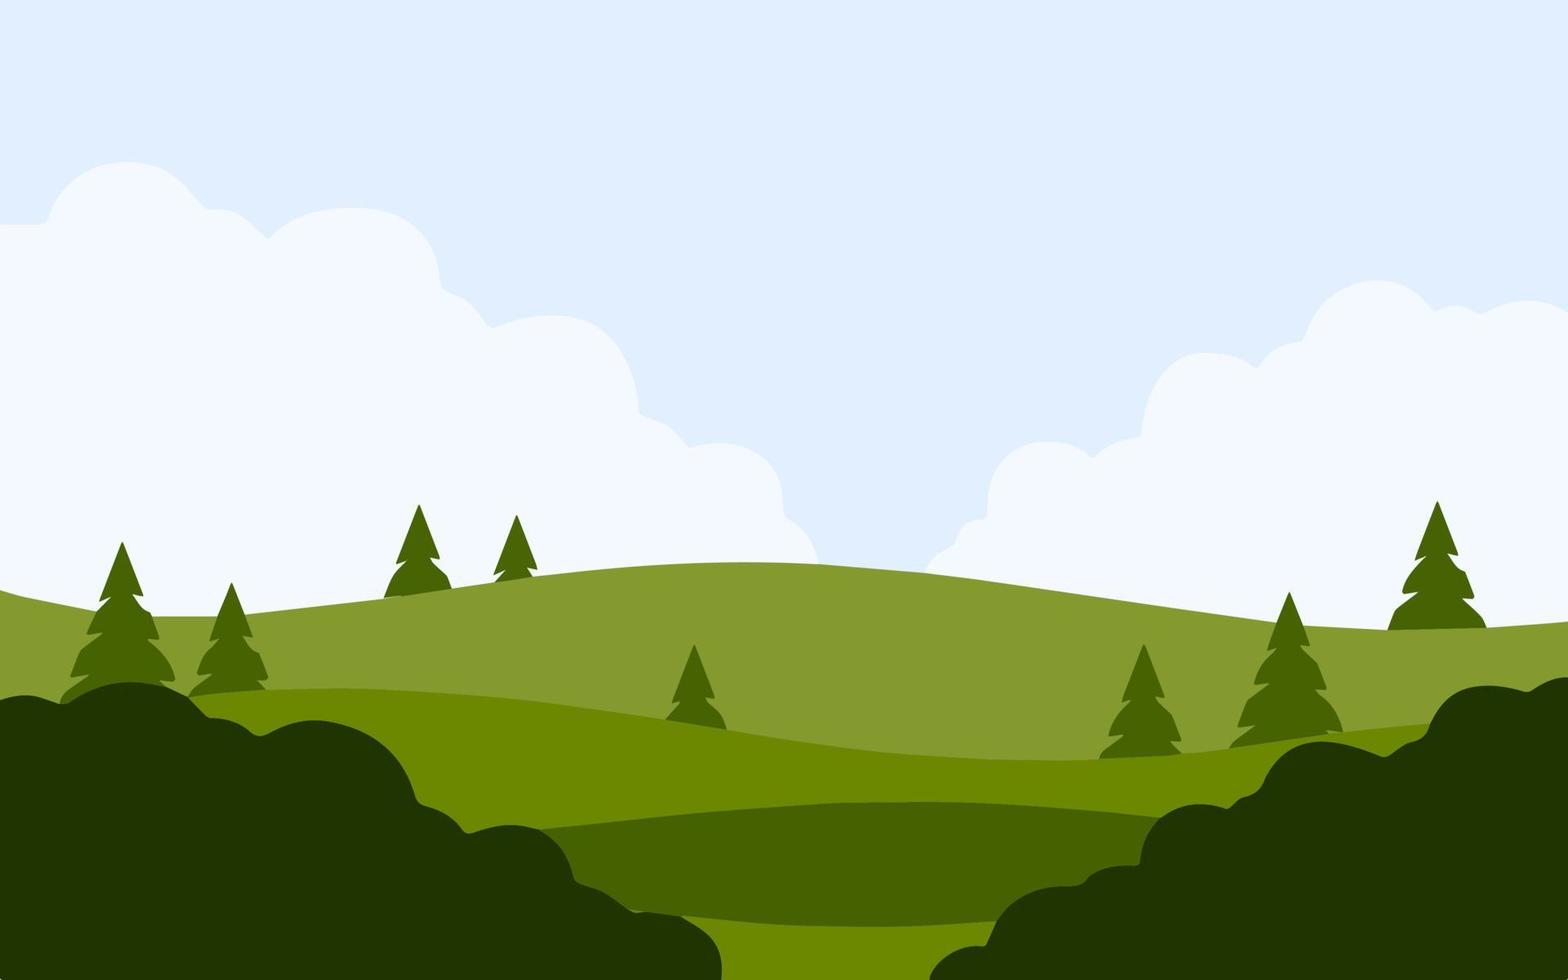 sommar landskap med grön kullar. naturlig landskap. fält med träd och buskar. tecknad serie platt illustration vektor